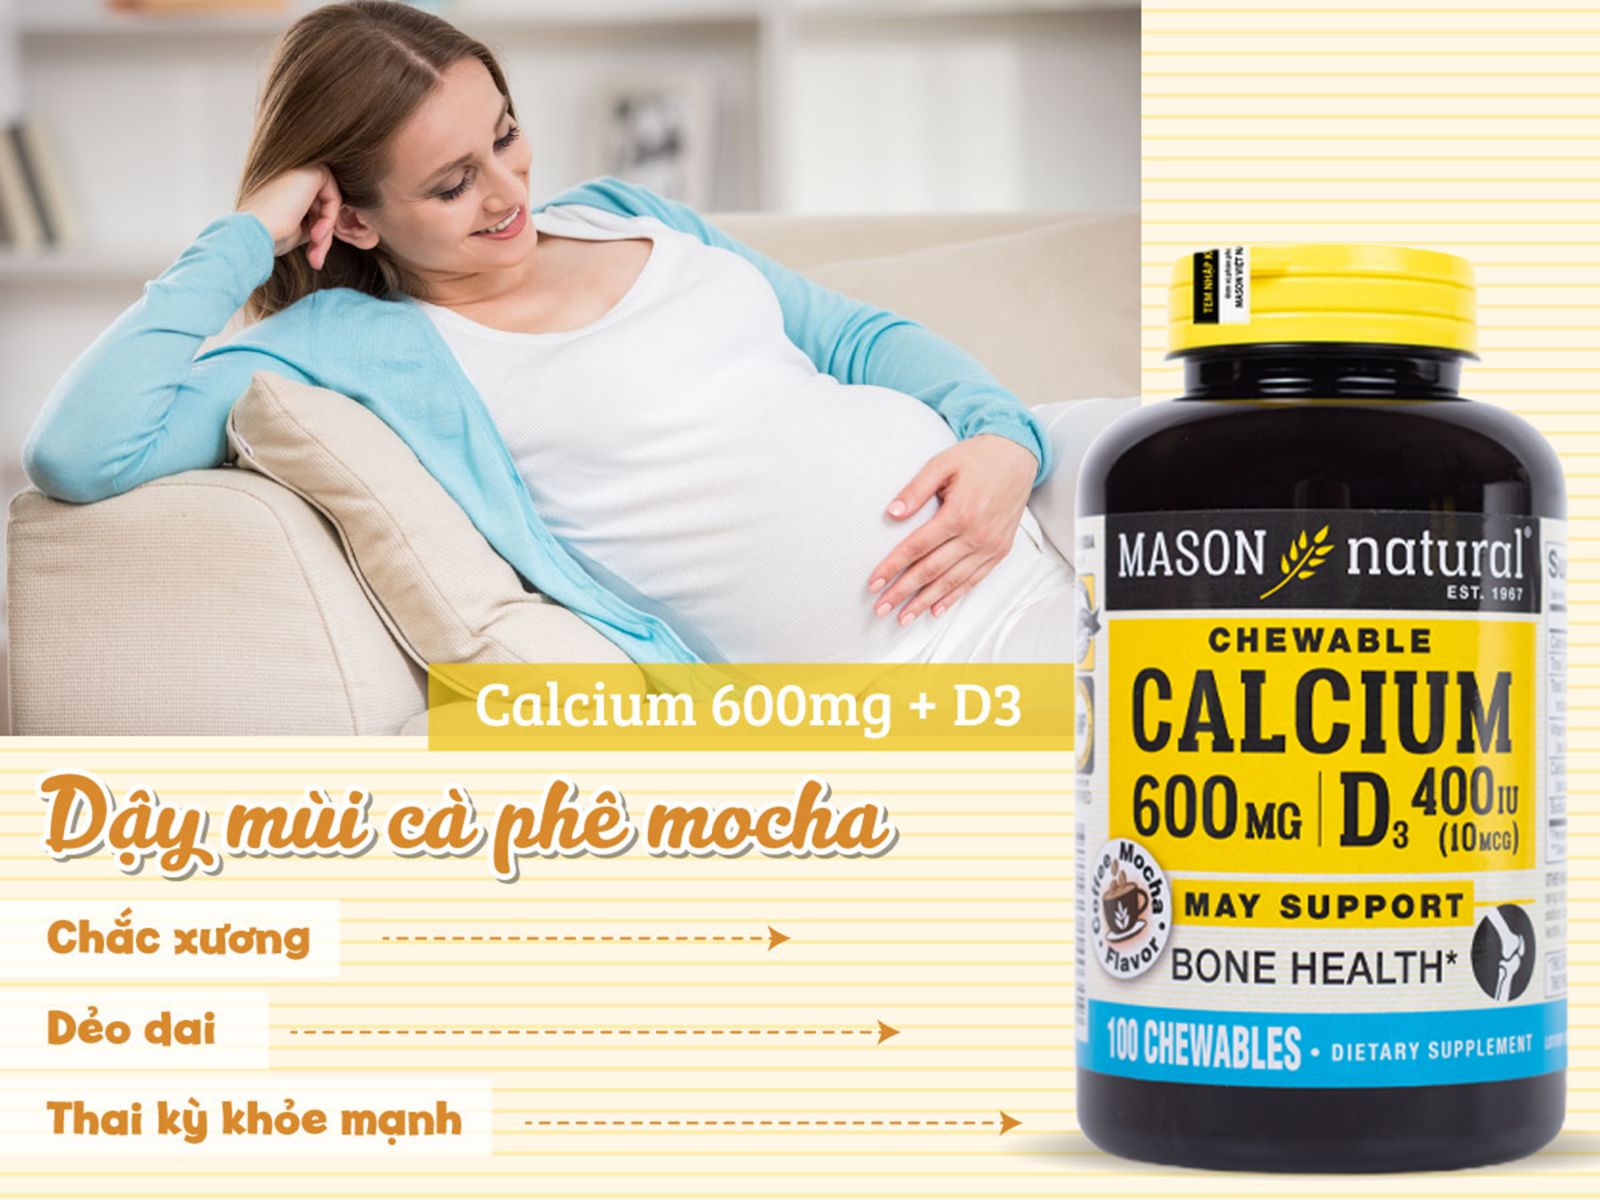 Mason Calcium 600mg + D3 được điều chế dưới dạng viên nhai vị cà phê, mocha hấp dẫn